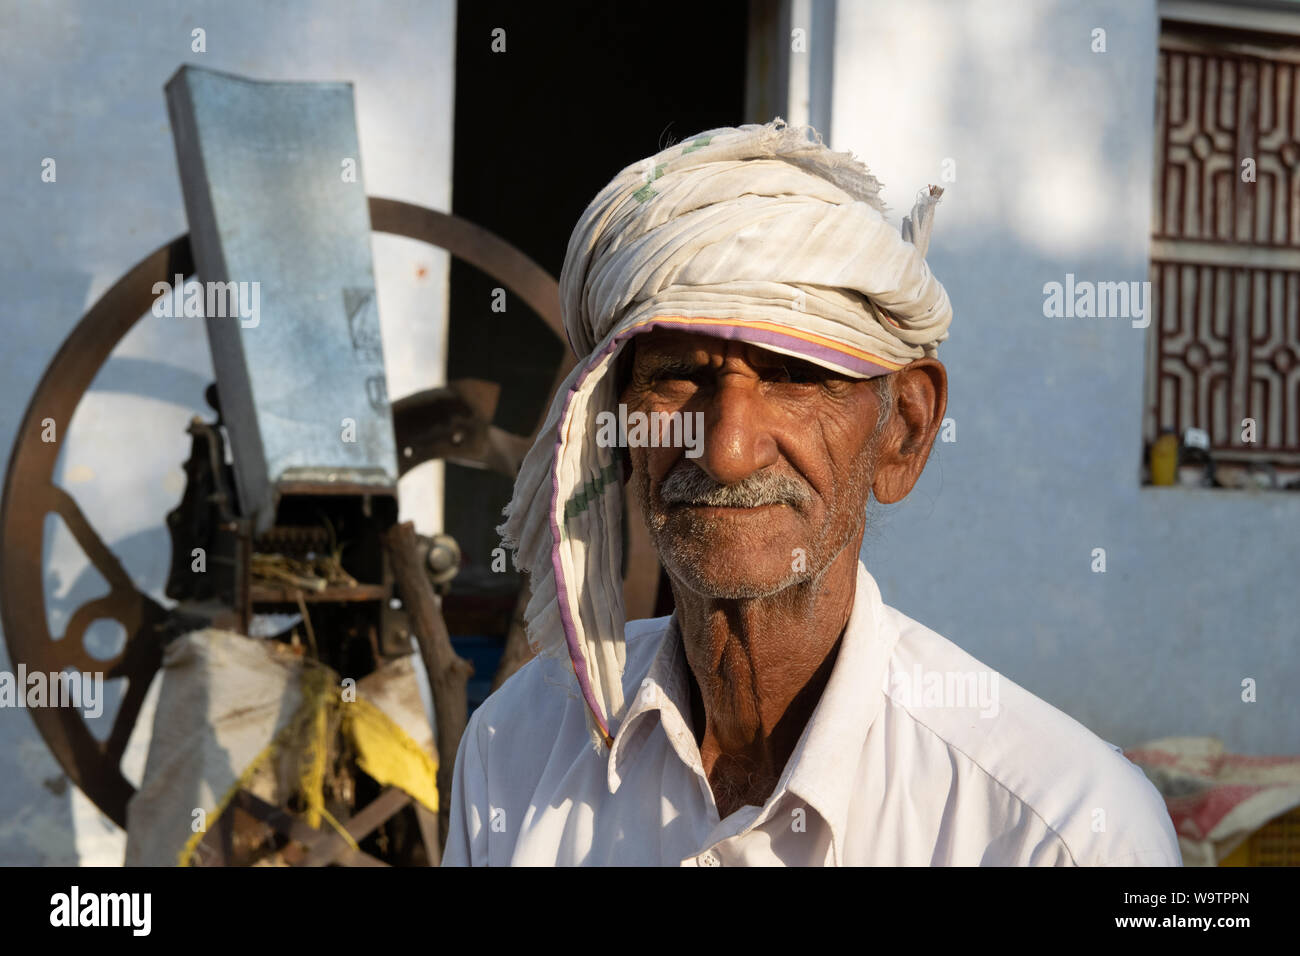 Ein alter Mann sitzt in einem Hof vor seinem Haus. Auf dem Kopf trägt er ein Tuch (Turban). Straßenszene in Mandawa (Rajasthan) Stock Photo